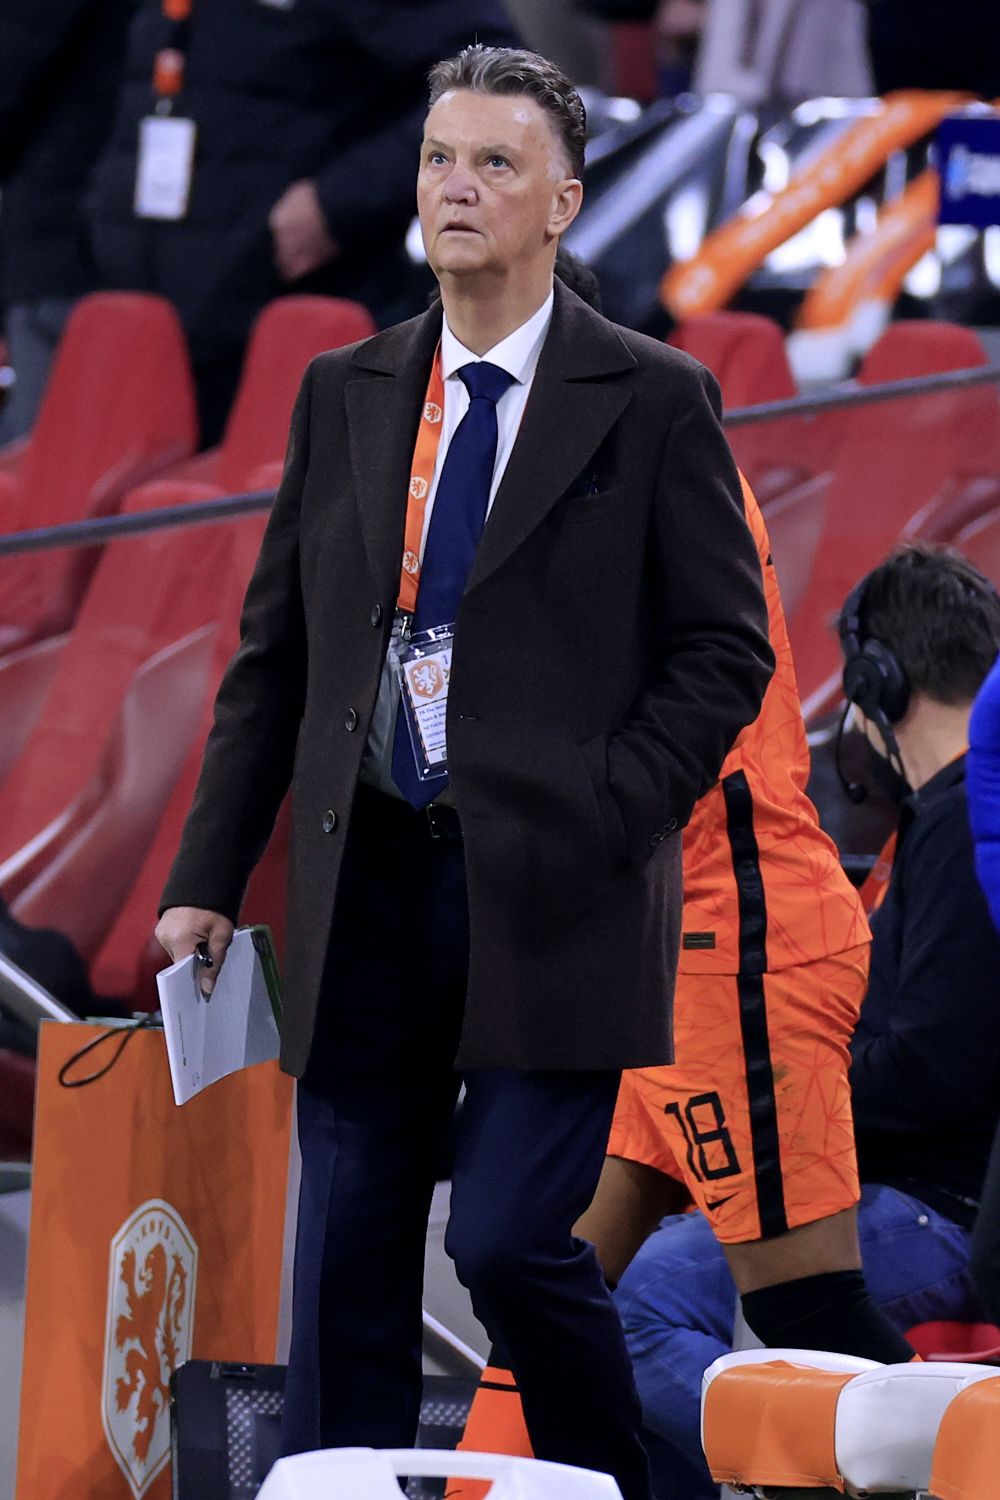 BREAKING NEWS! Anunț șoc în lumea fotbalului: Louis van Gaal a dezvăluit în direct că a fost diagnosticat cu o formă de cancer agresivă _23